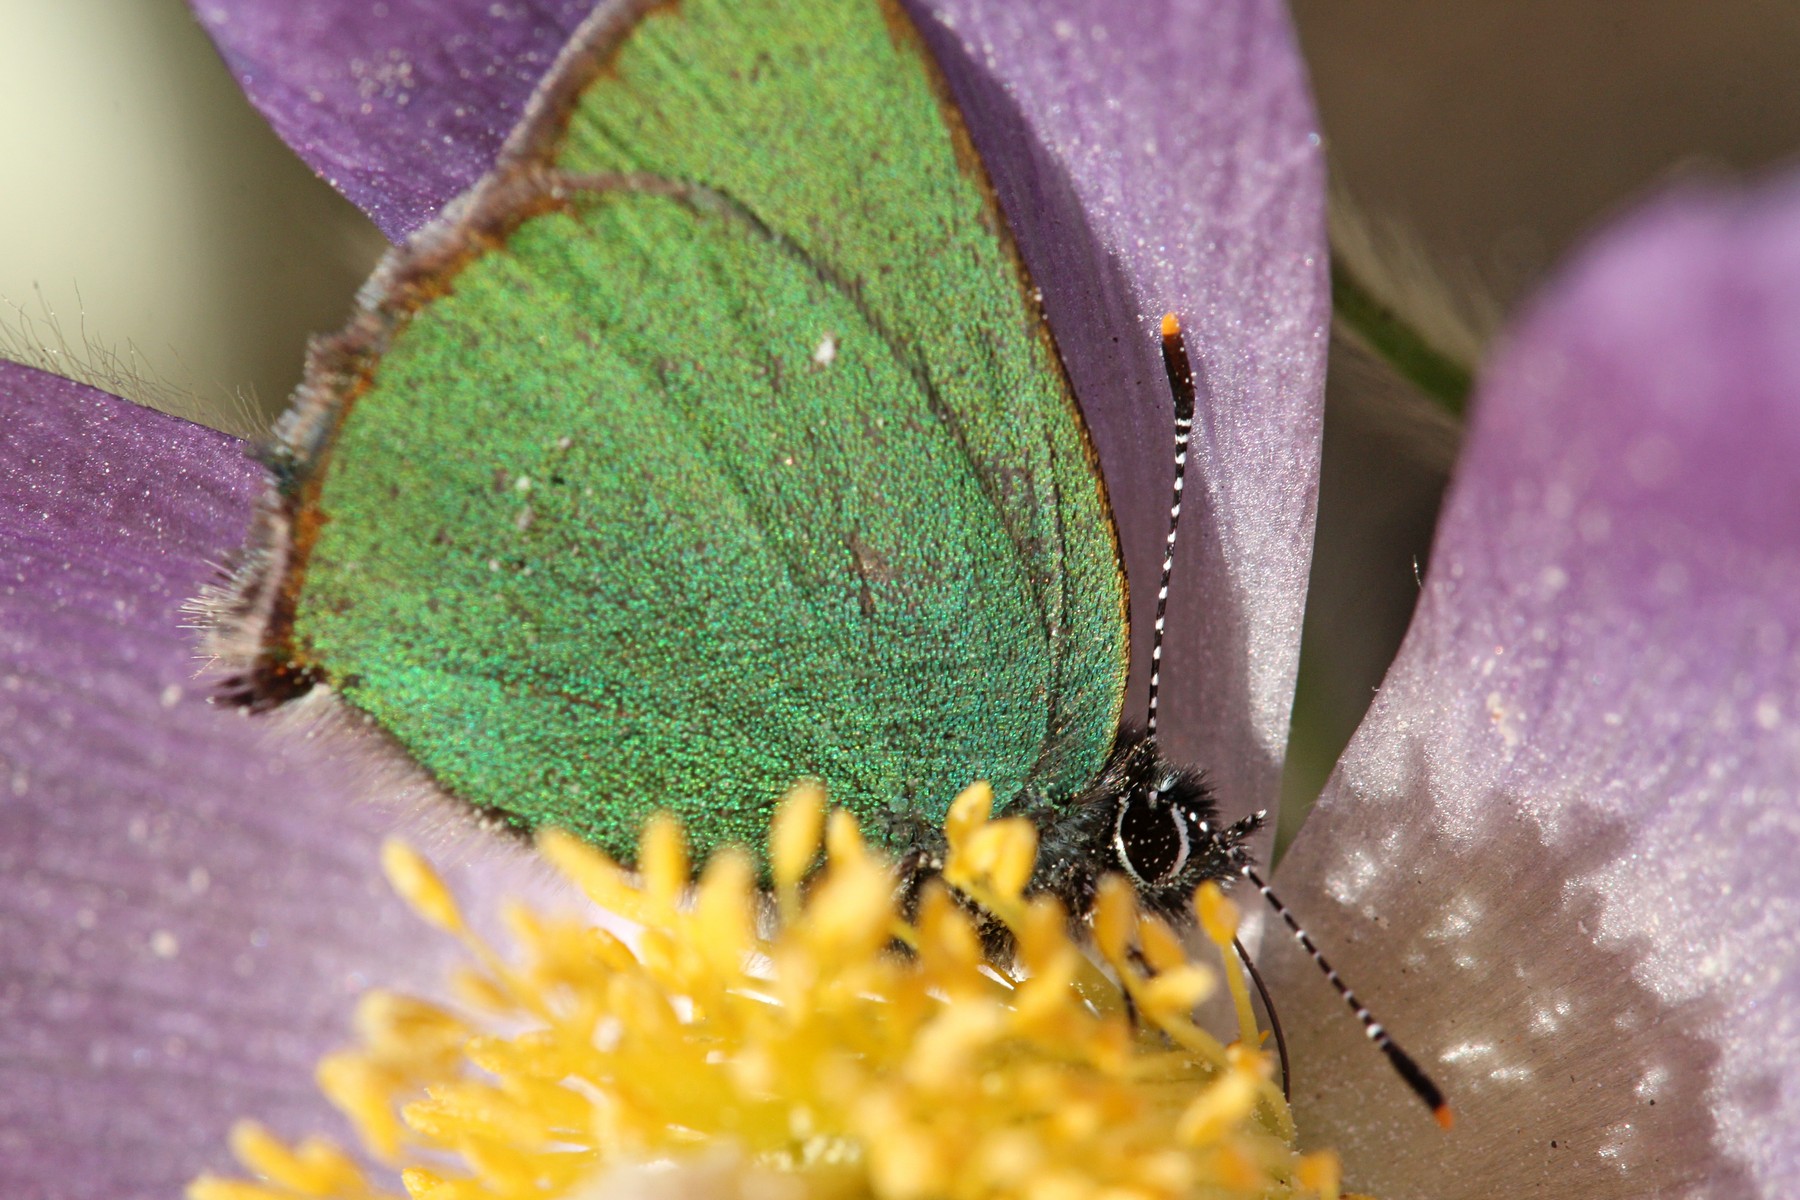 Изучаем самых красивых и необычных бабочек (фото настоящее) — Наука на security58.ru